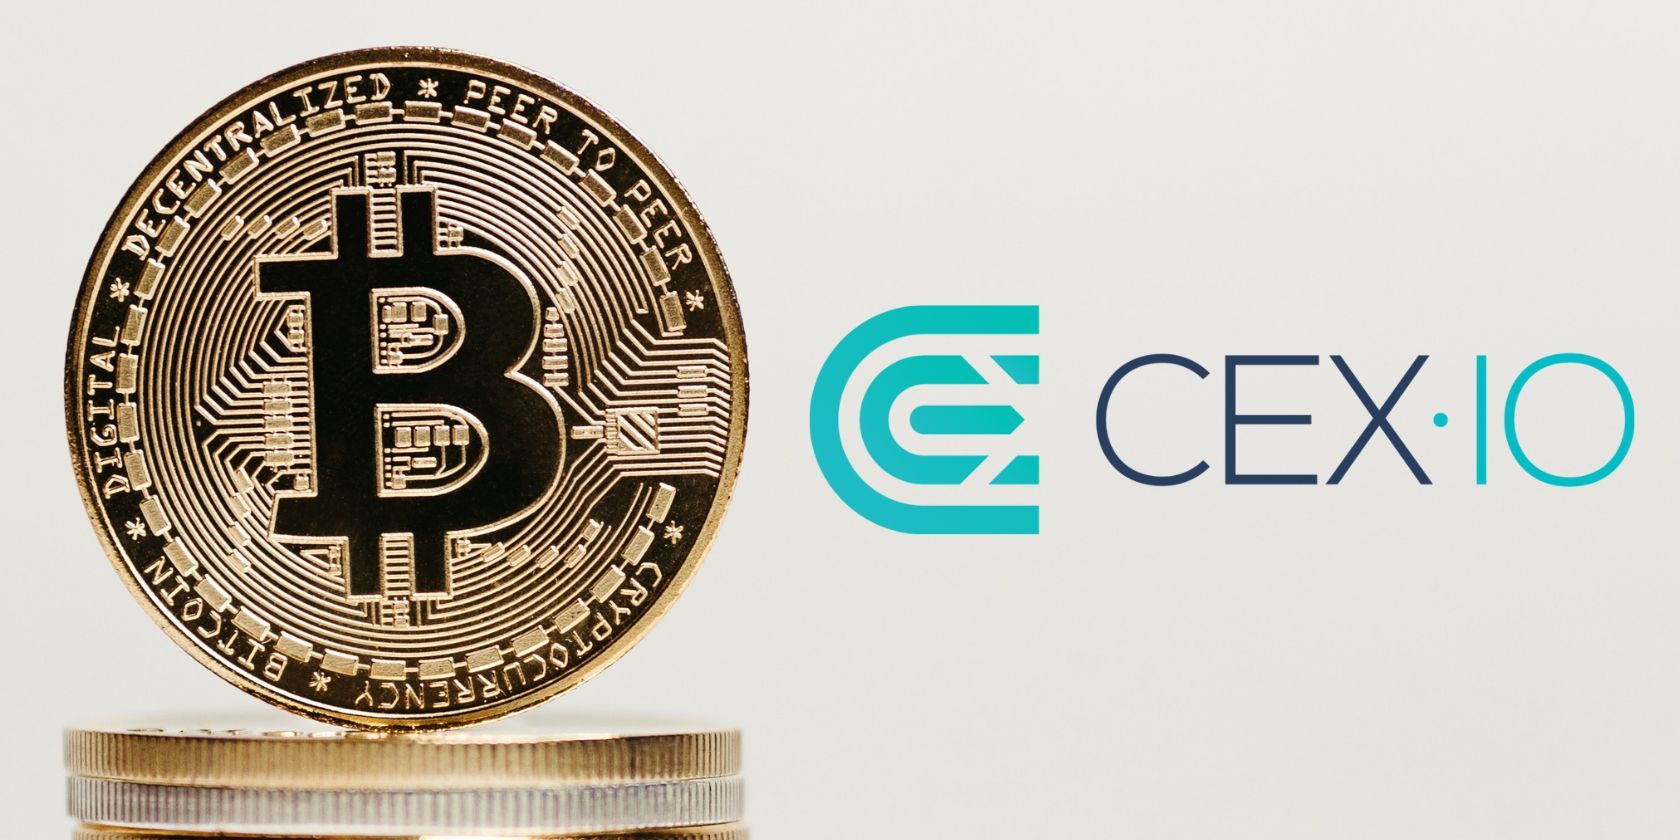 cex.io logo next to bitcoin stack